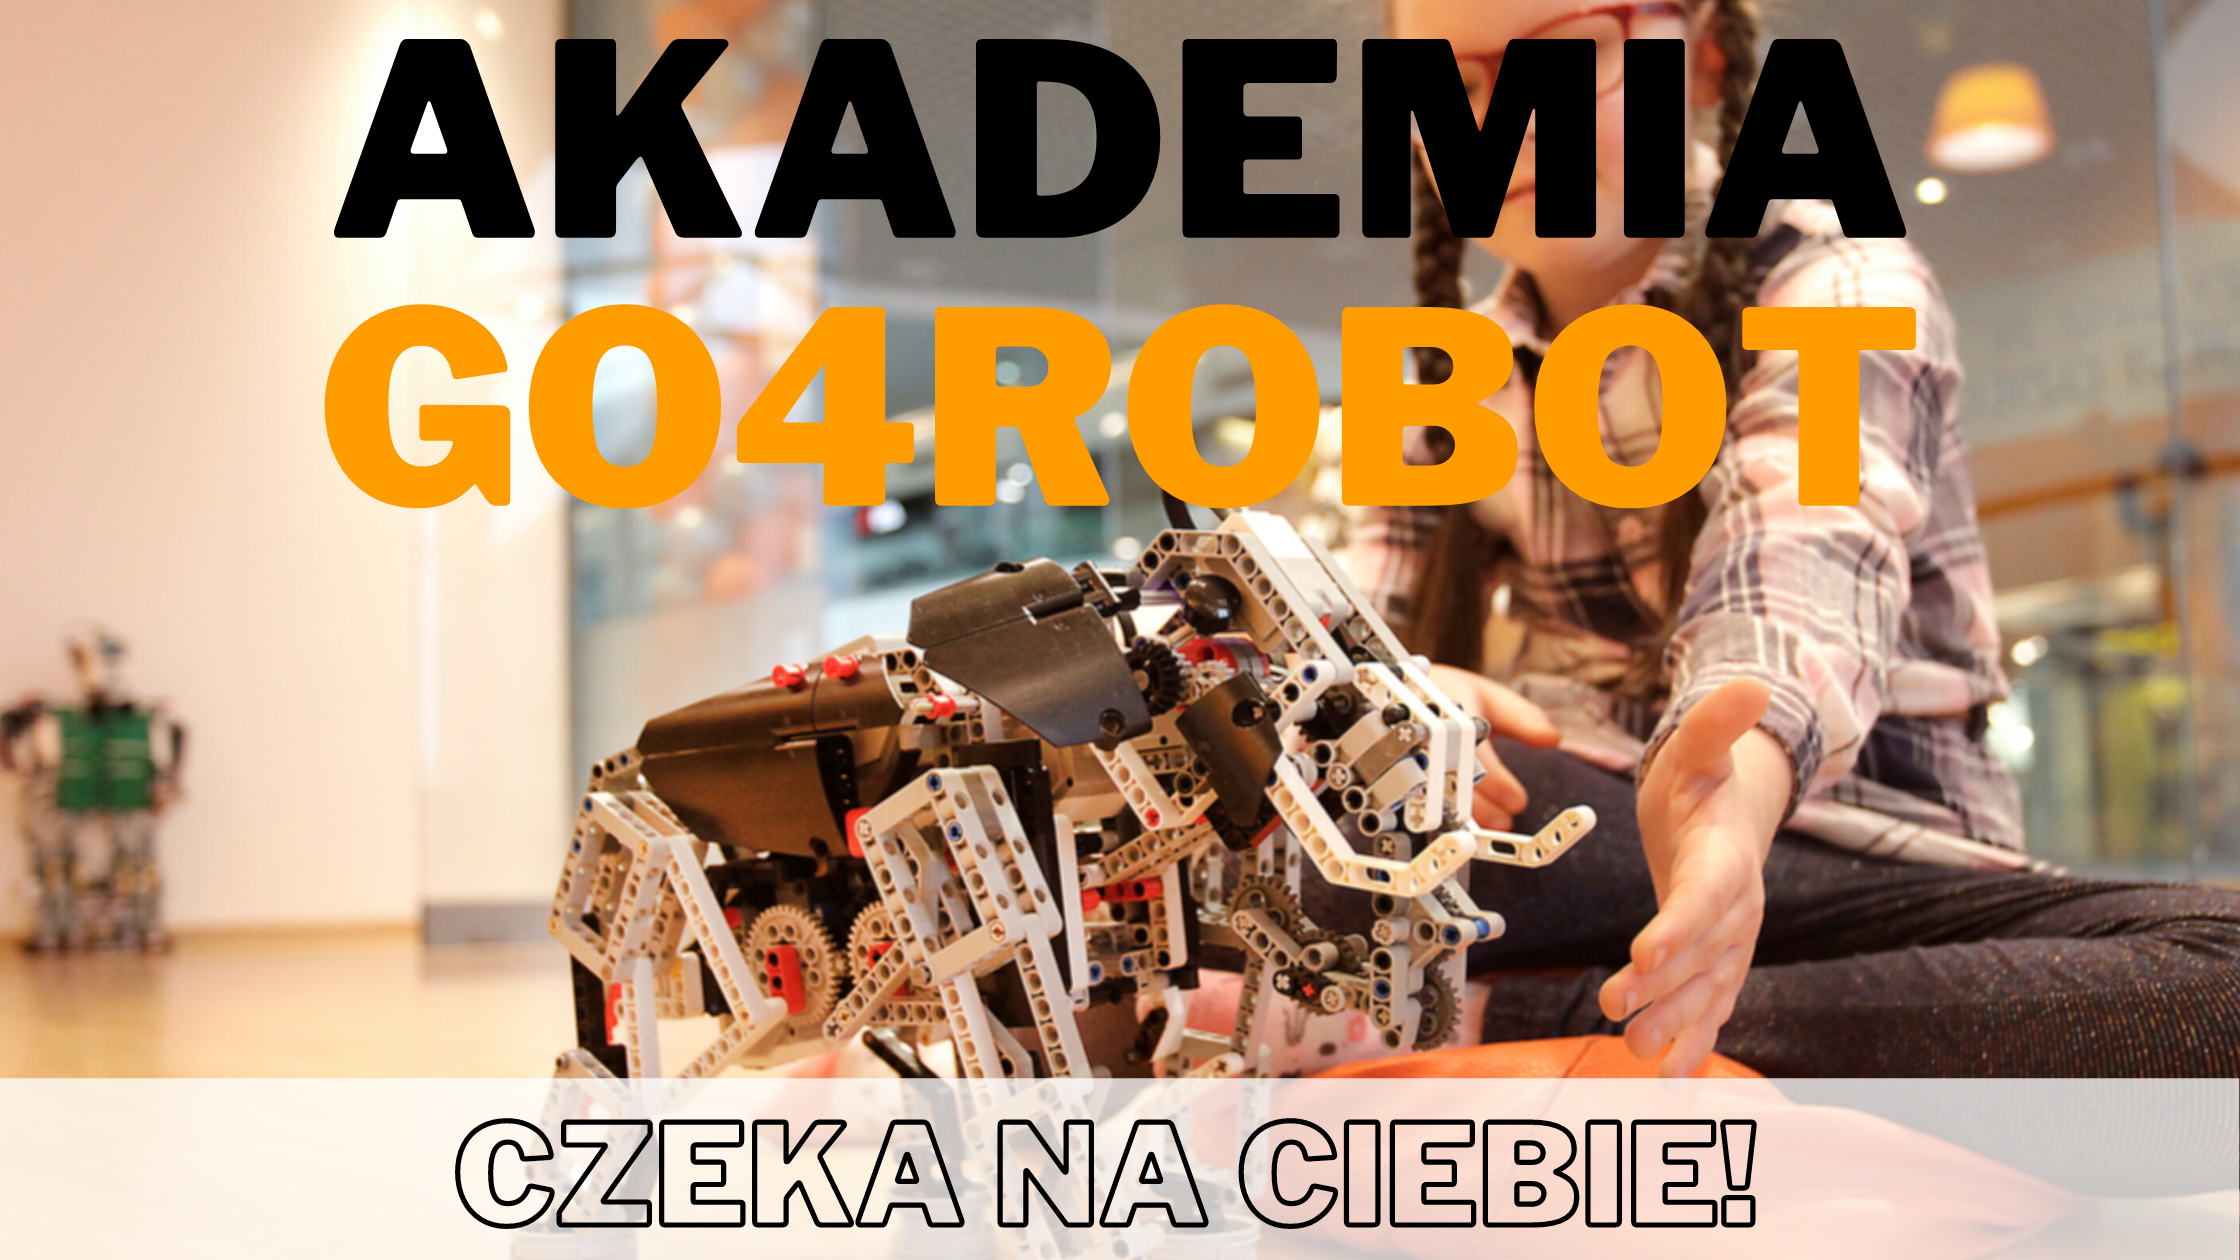 Akademia Go4Robot czeka na Ciebie!